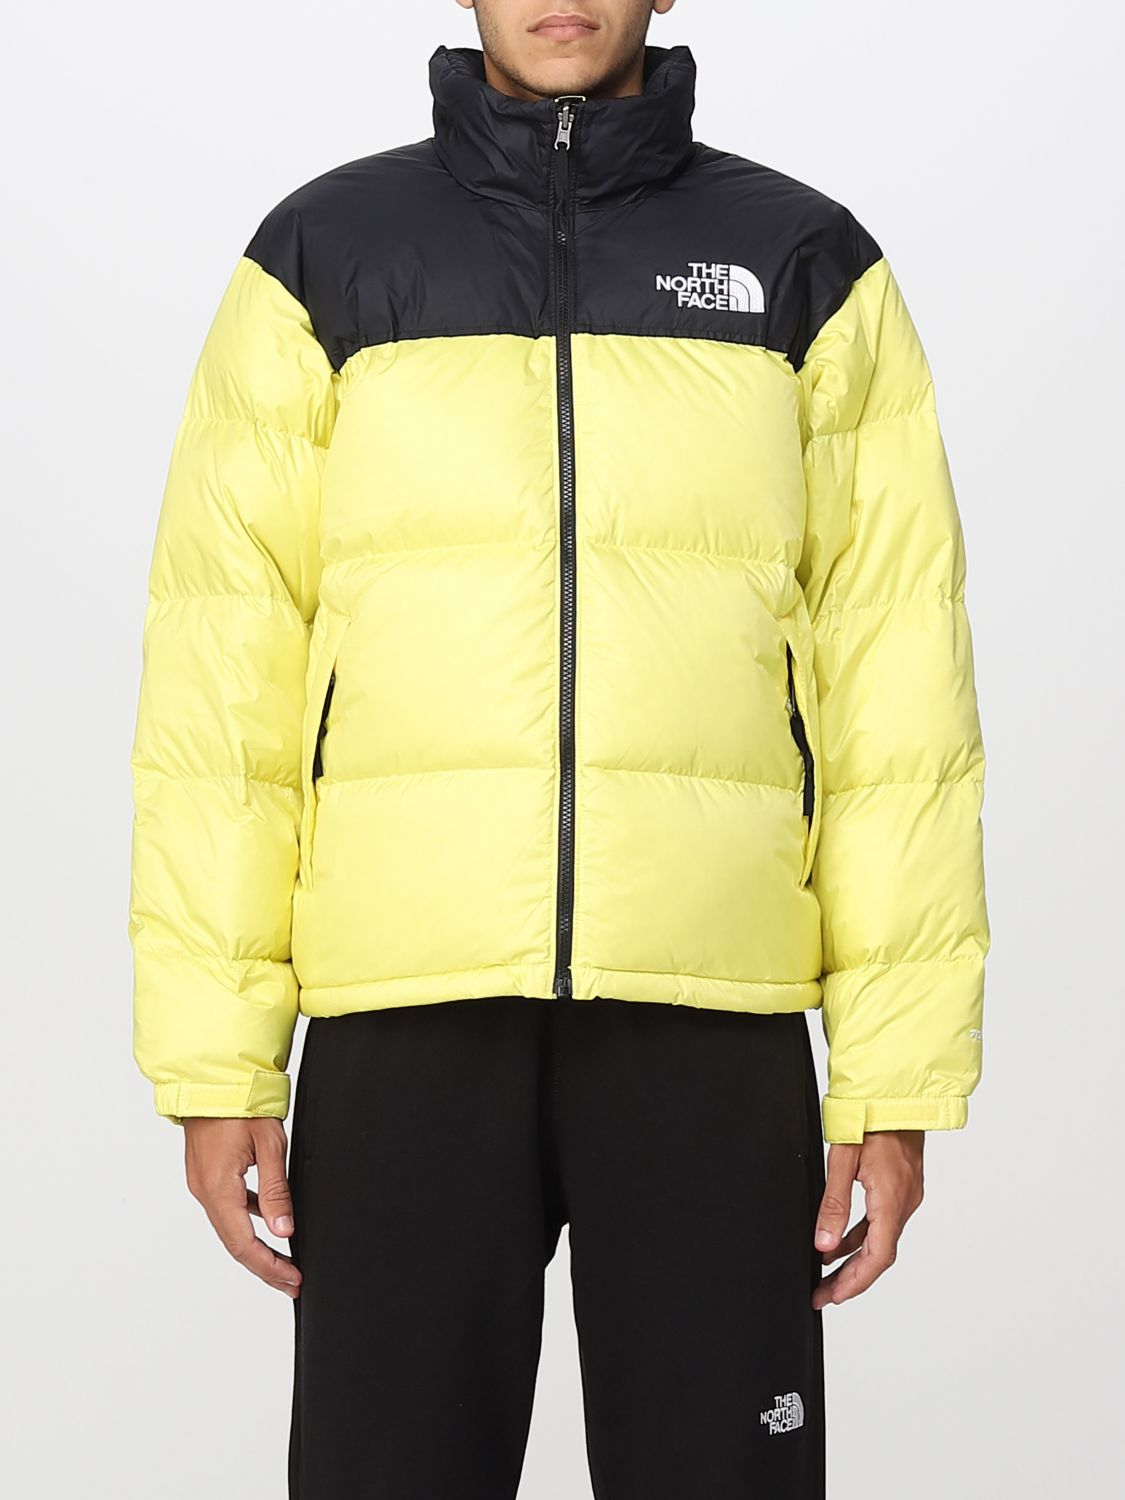 versieren Geneigd zijn getuige THE NORTH FACE: jacket for man - Yellow | The North Face jacket NF0A3C8D  online on GIGLIO.COM